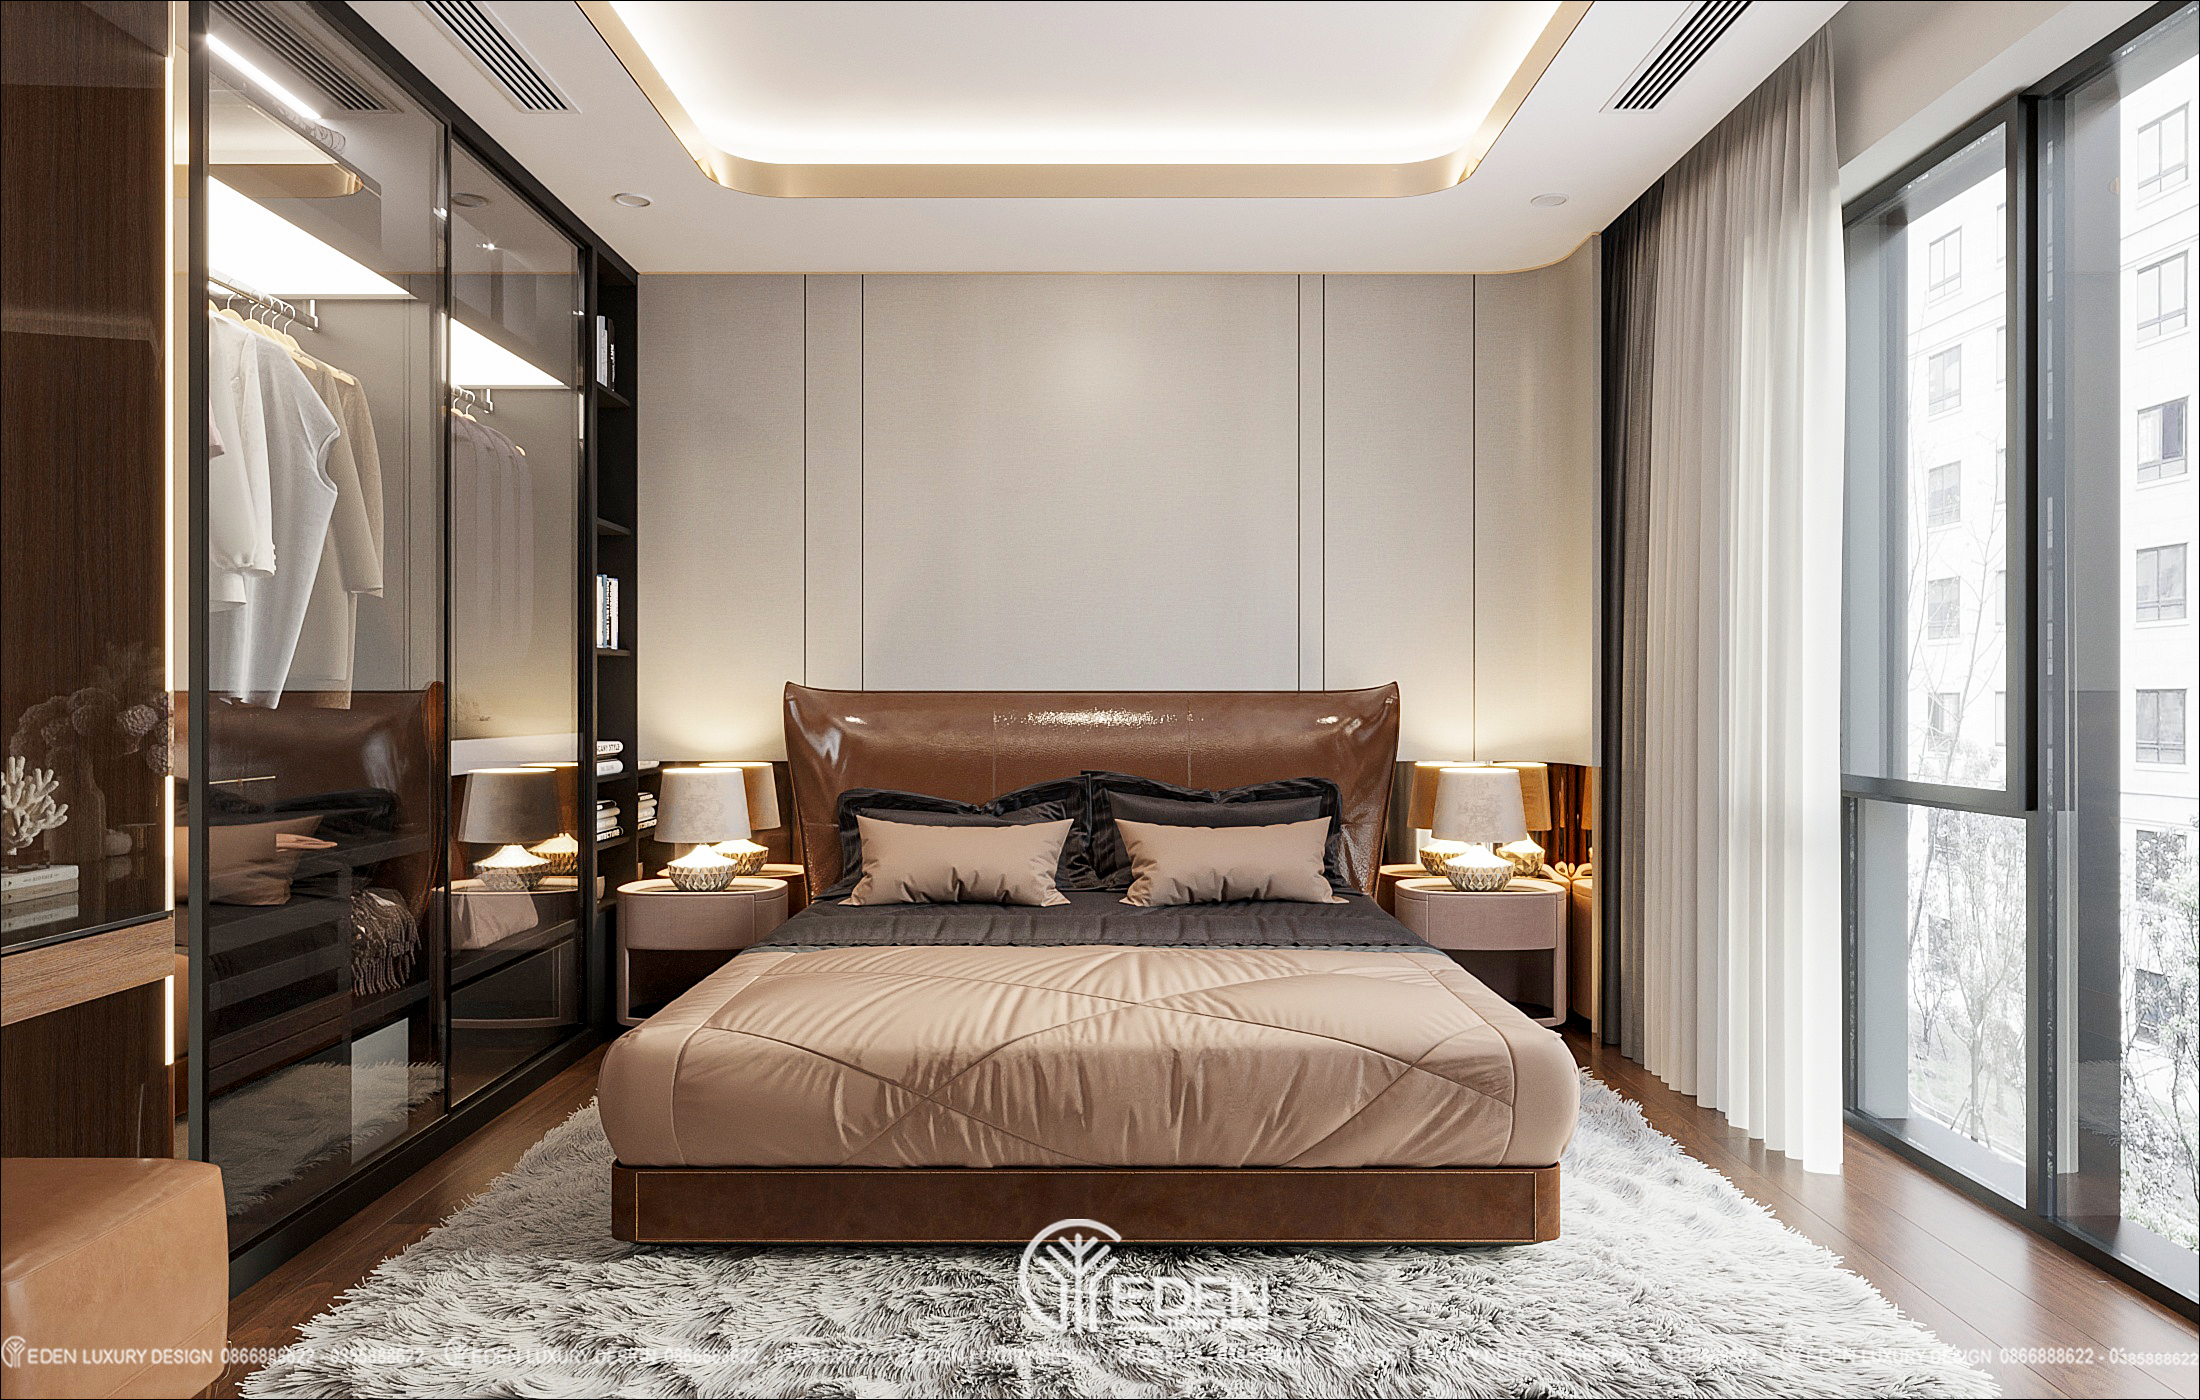 Nâu gỗ ấm áp, nâu da sang trọng đặt cùng những gam màu off white đem đến không gian phòng ngủ tinh tế, đẳng cấp và ấm áp.